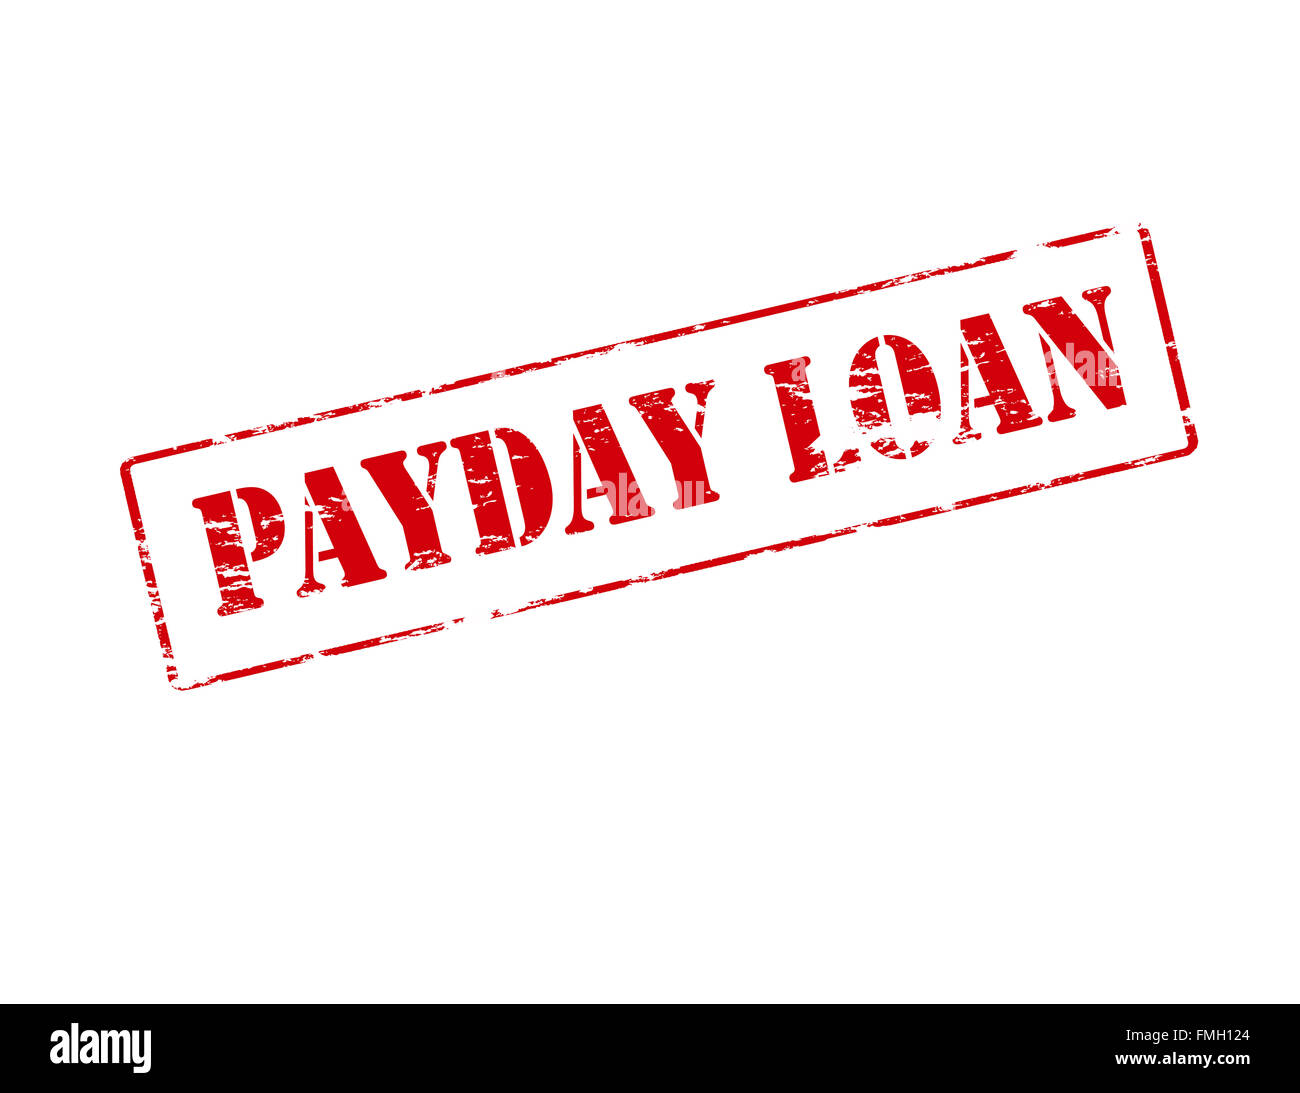 Timbro di gomma con il testo di essere fiera payday loan interno, illustrazione vettoriale Foto Stock